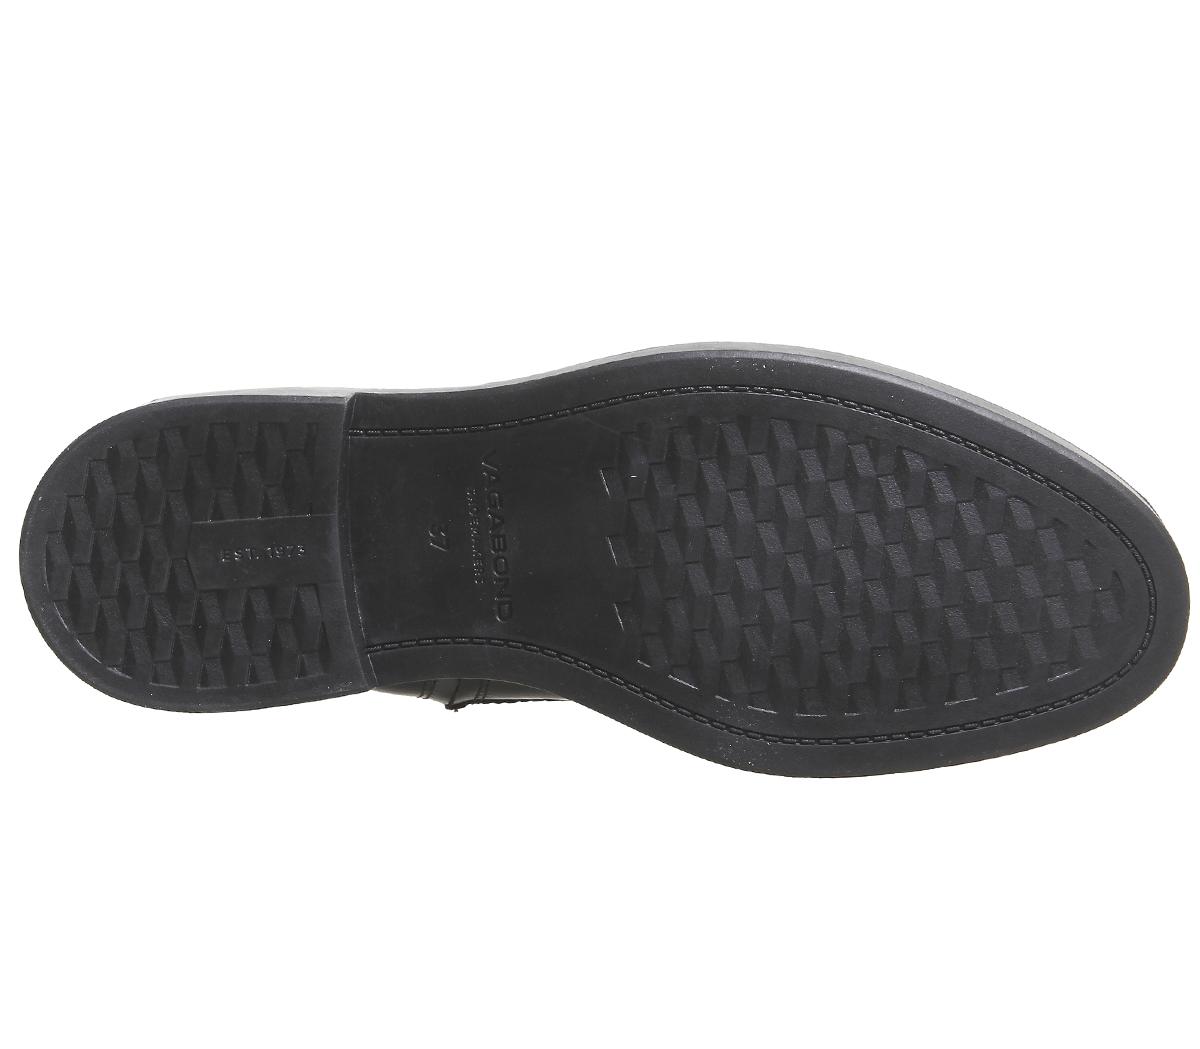 Vagabond Shoemakers Alex Lace Boots Hi Black Polished Leather - Women's ...